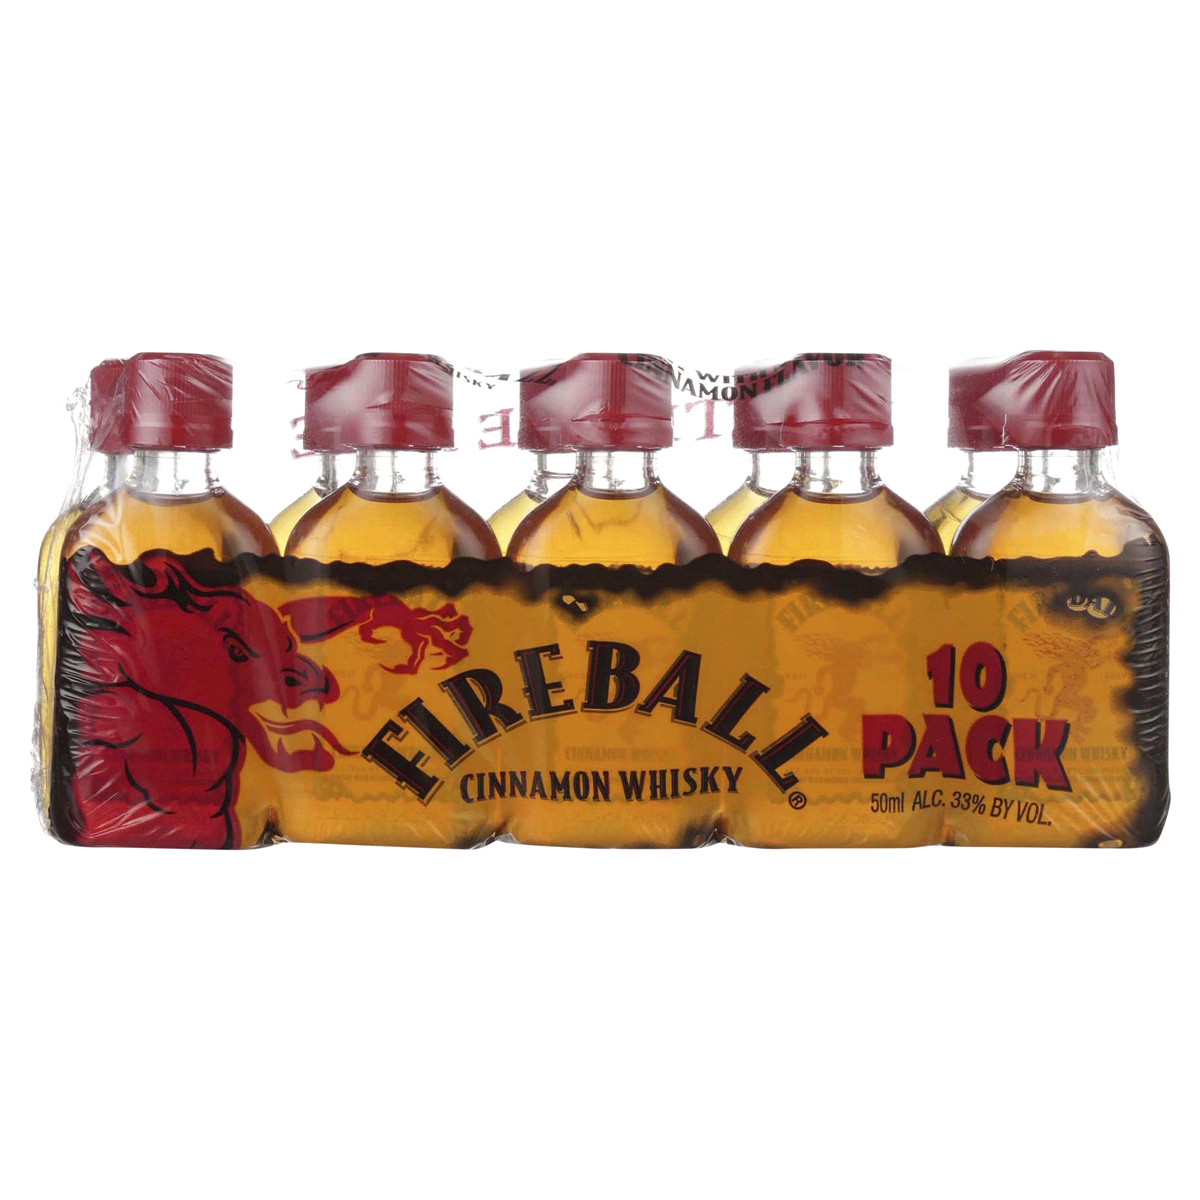 Fireball Cinnamon Whisky 10-Pack (50ml 10 pack)